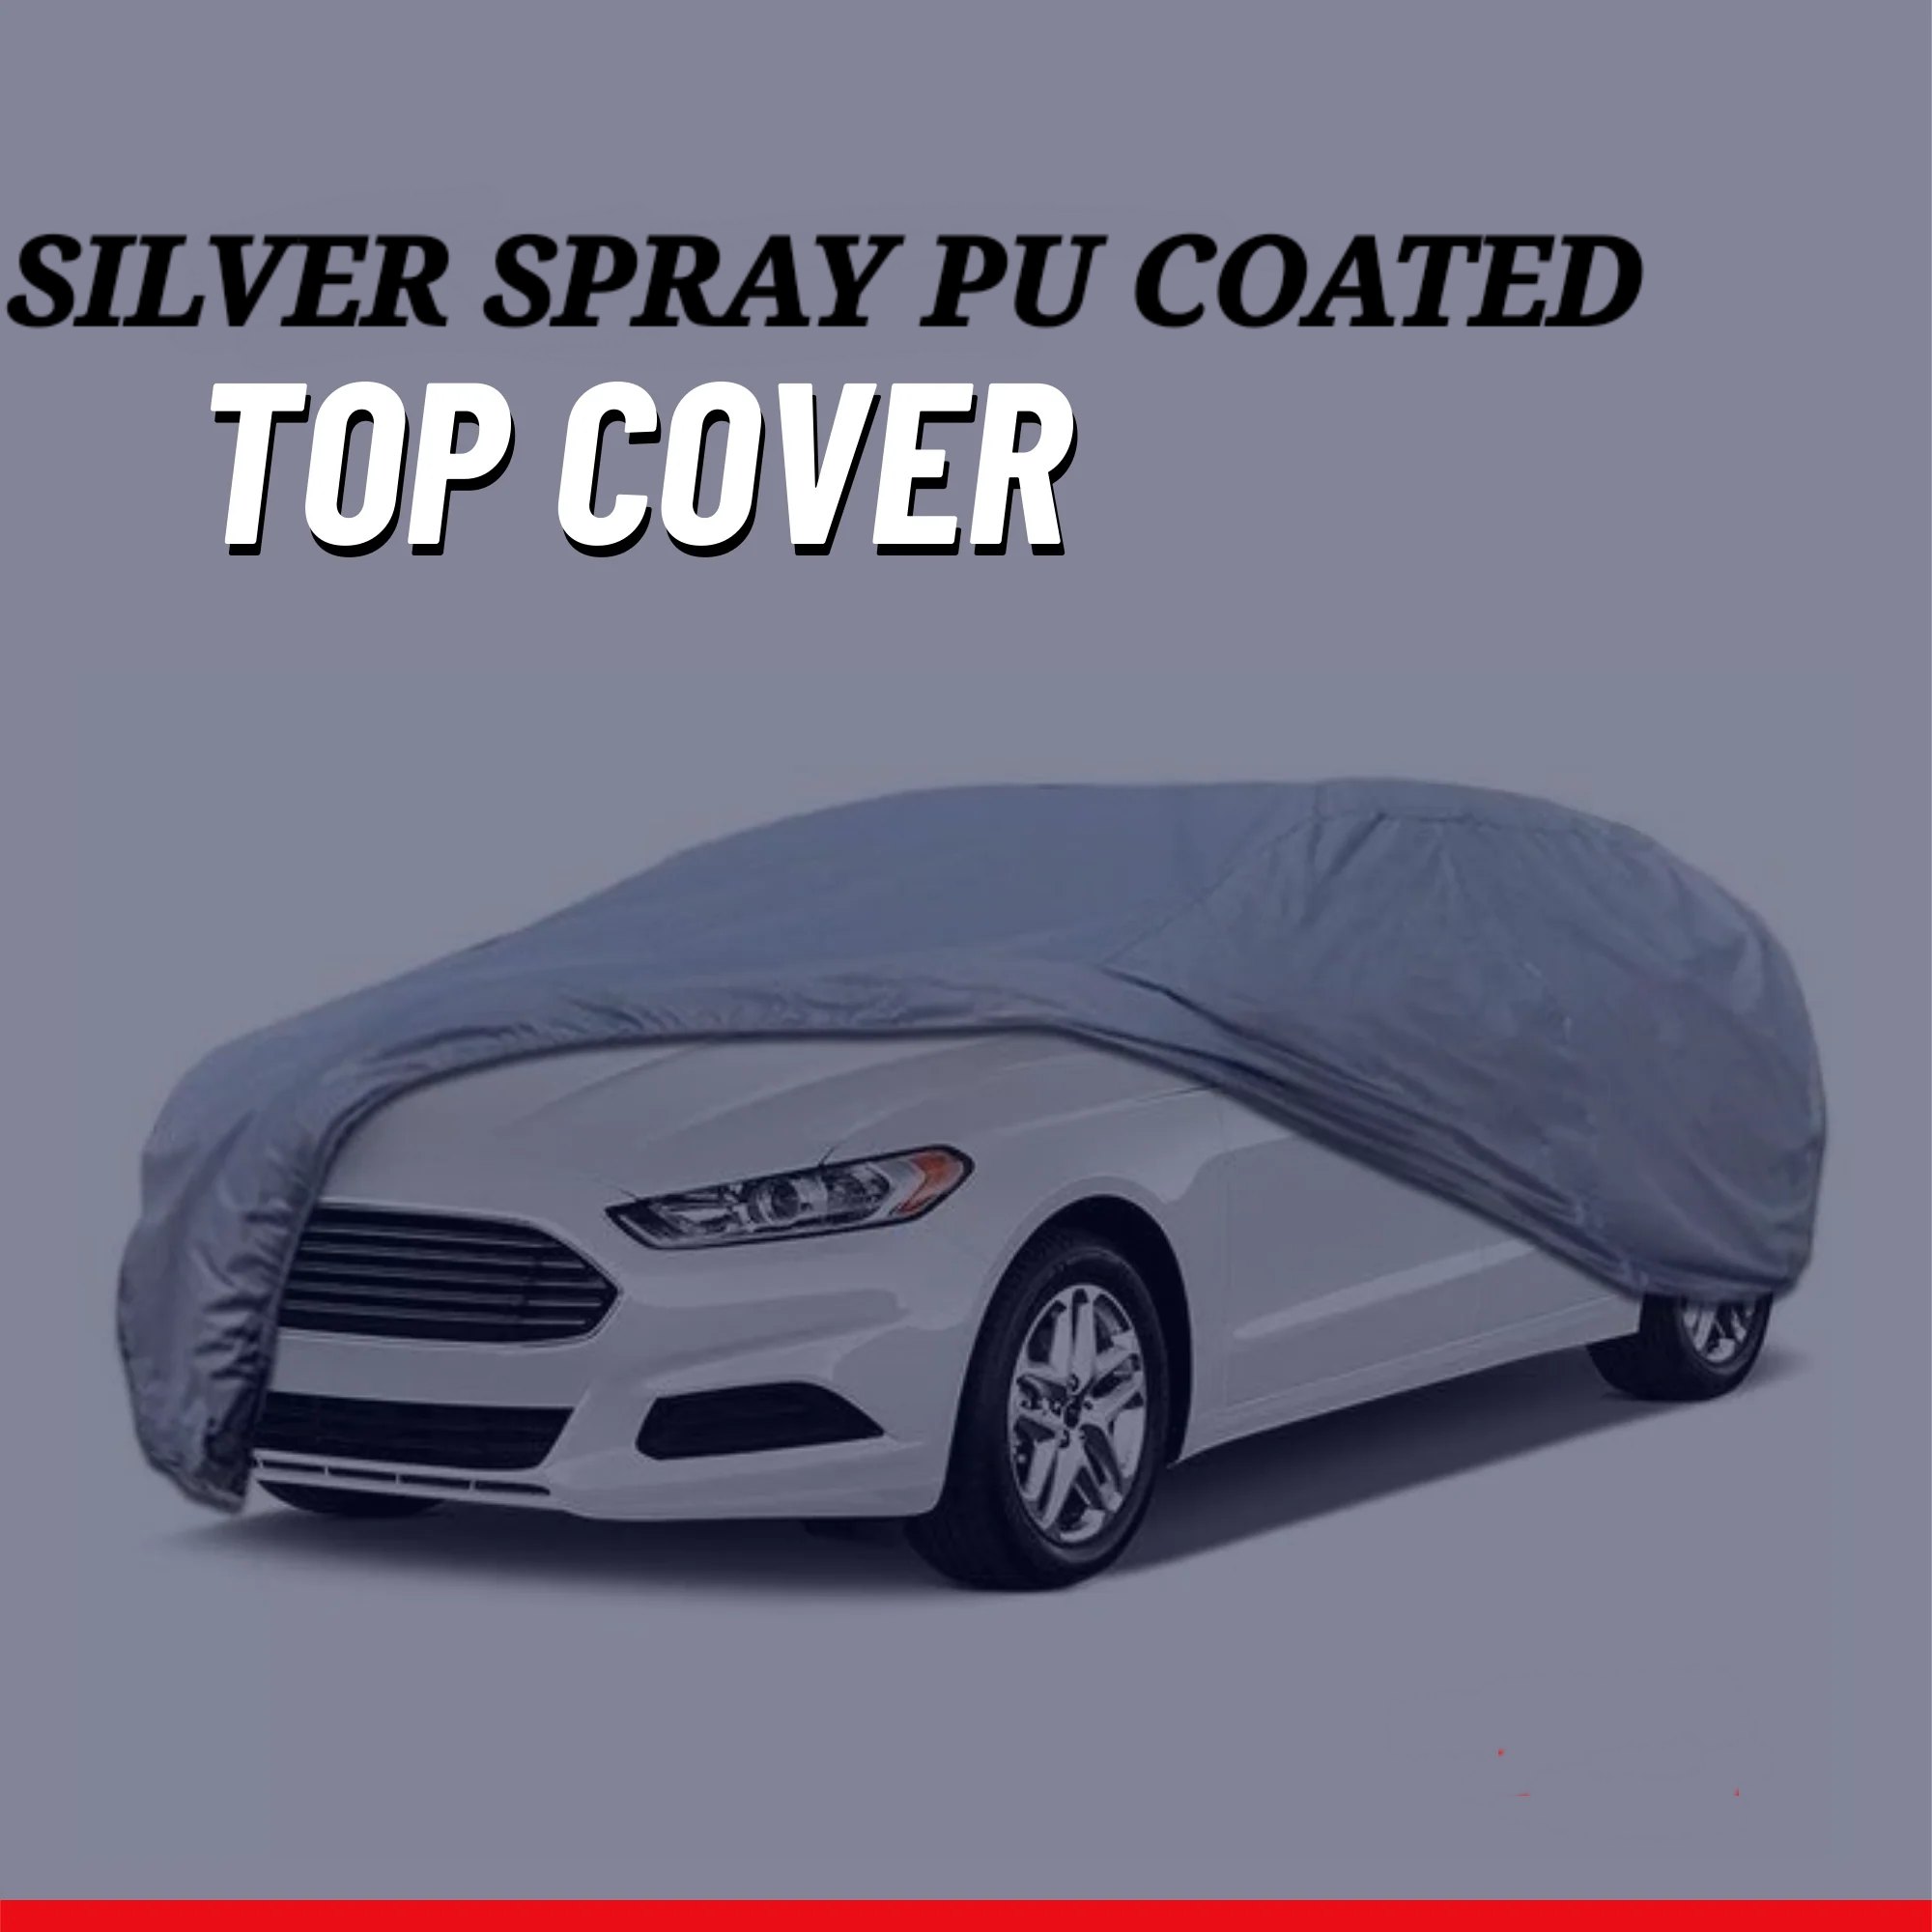 Suzuki Every 2005-2023 Car Top Cover - Waterproof & Dustproof Silver Spray Coated + Free Bag